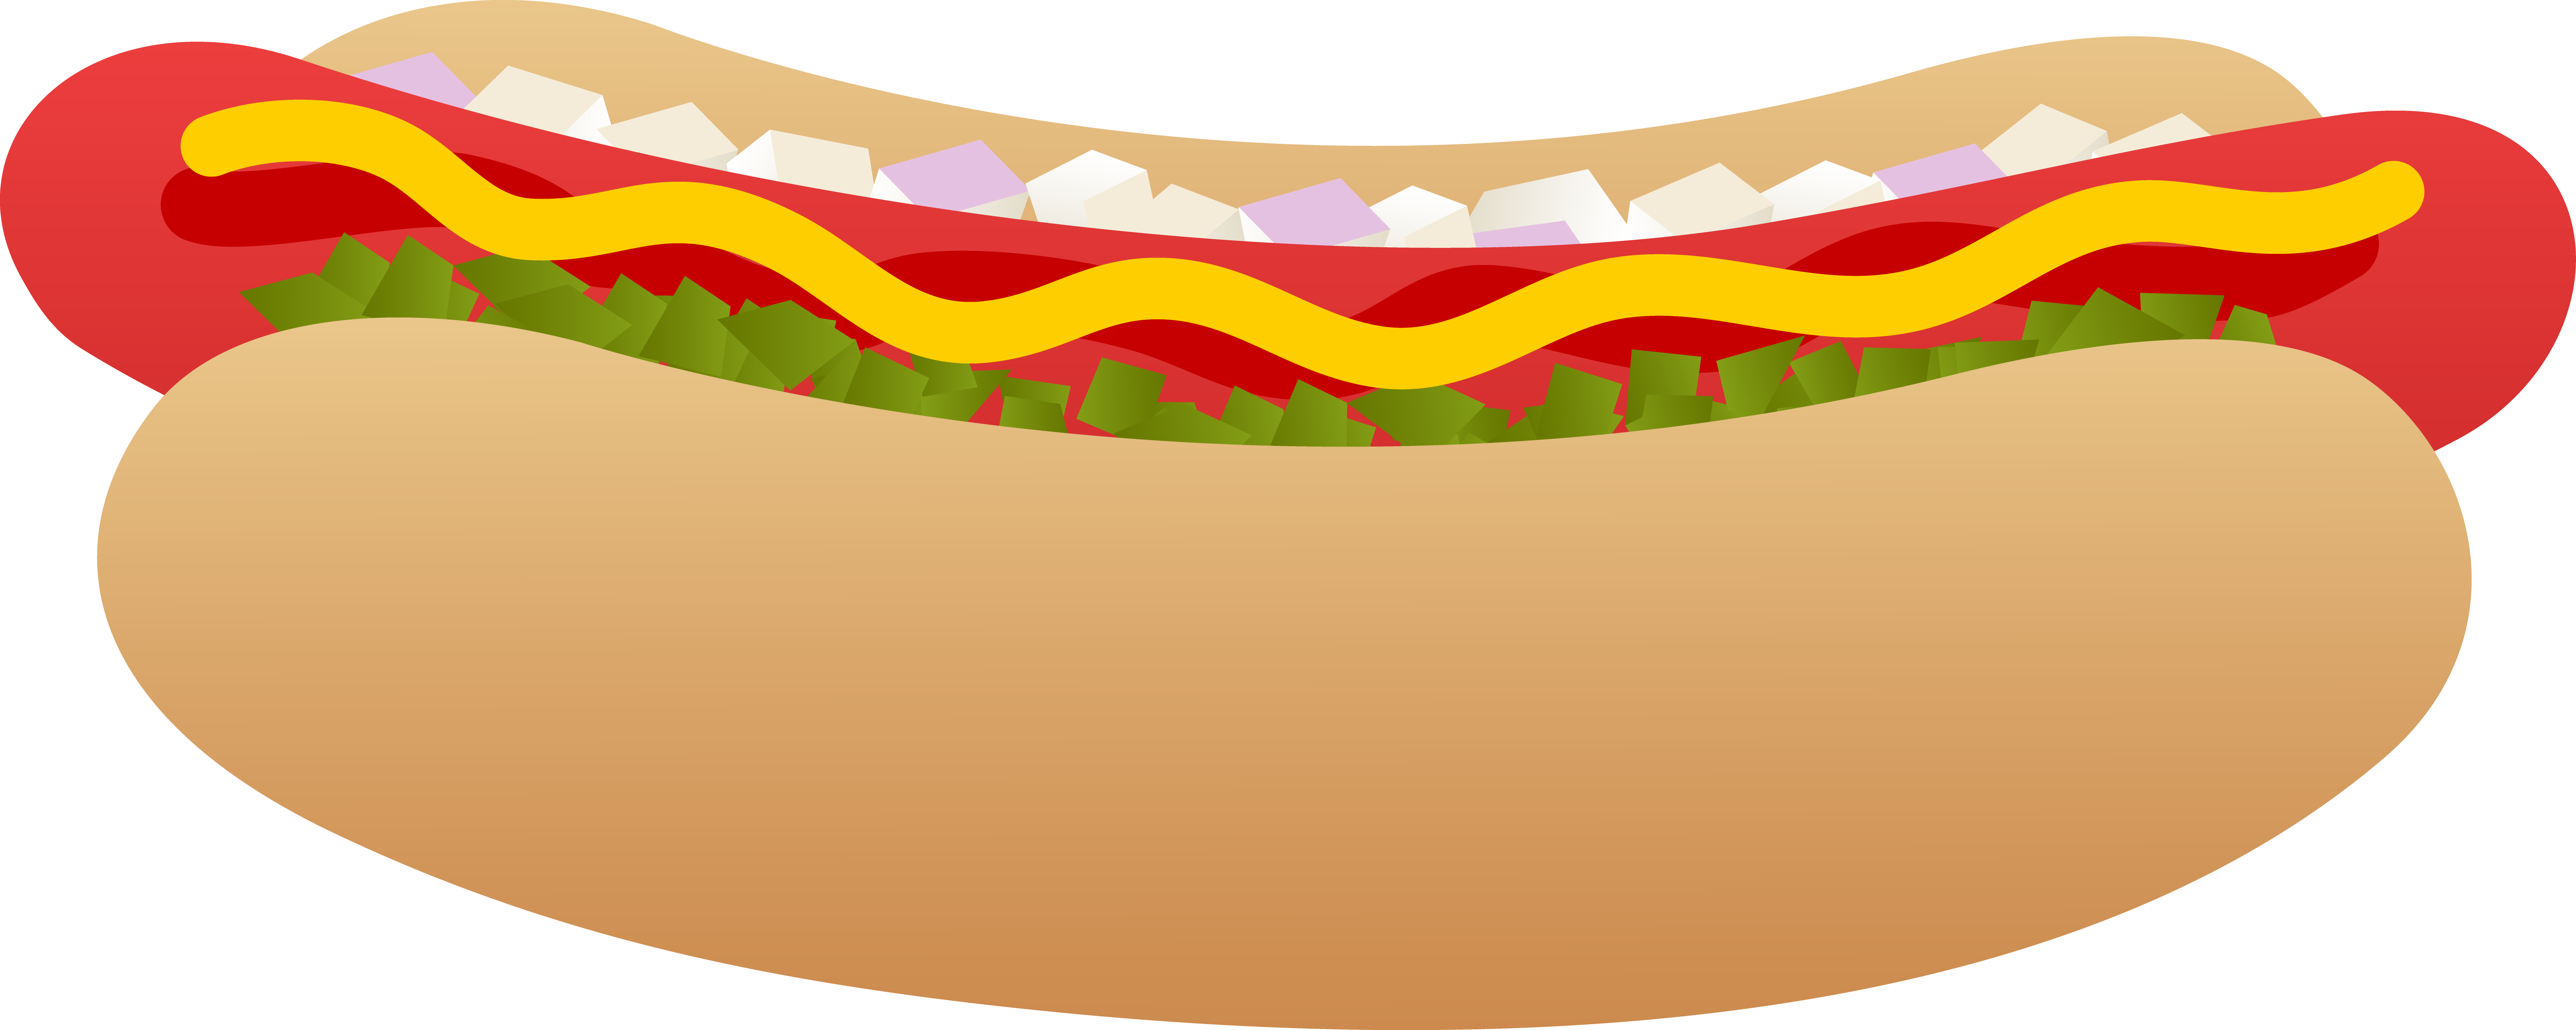 Hot Dog Sandwich Clipart - Hot Dogs Clip Art (7846x3137)